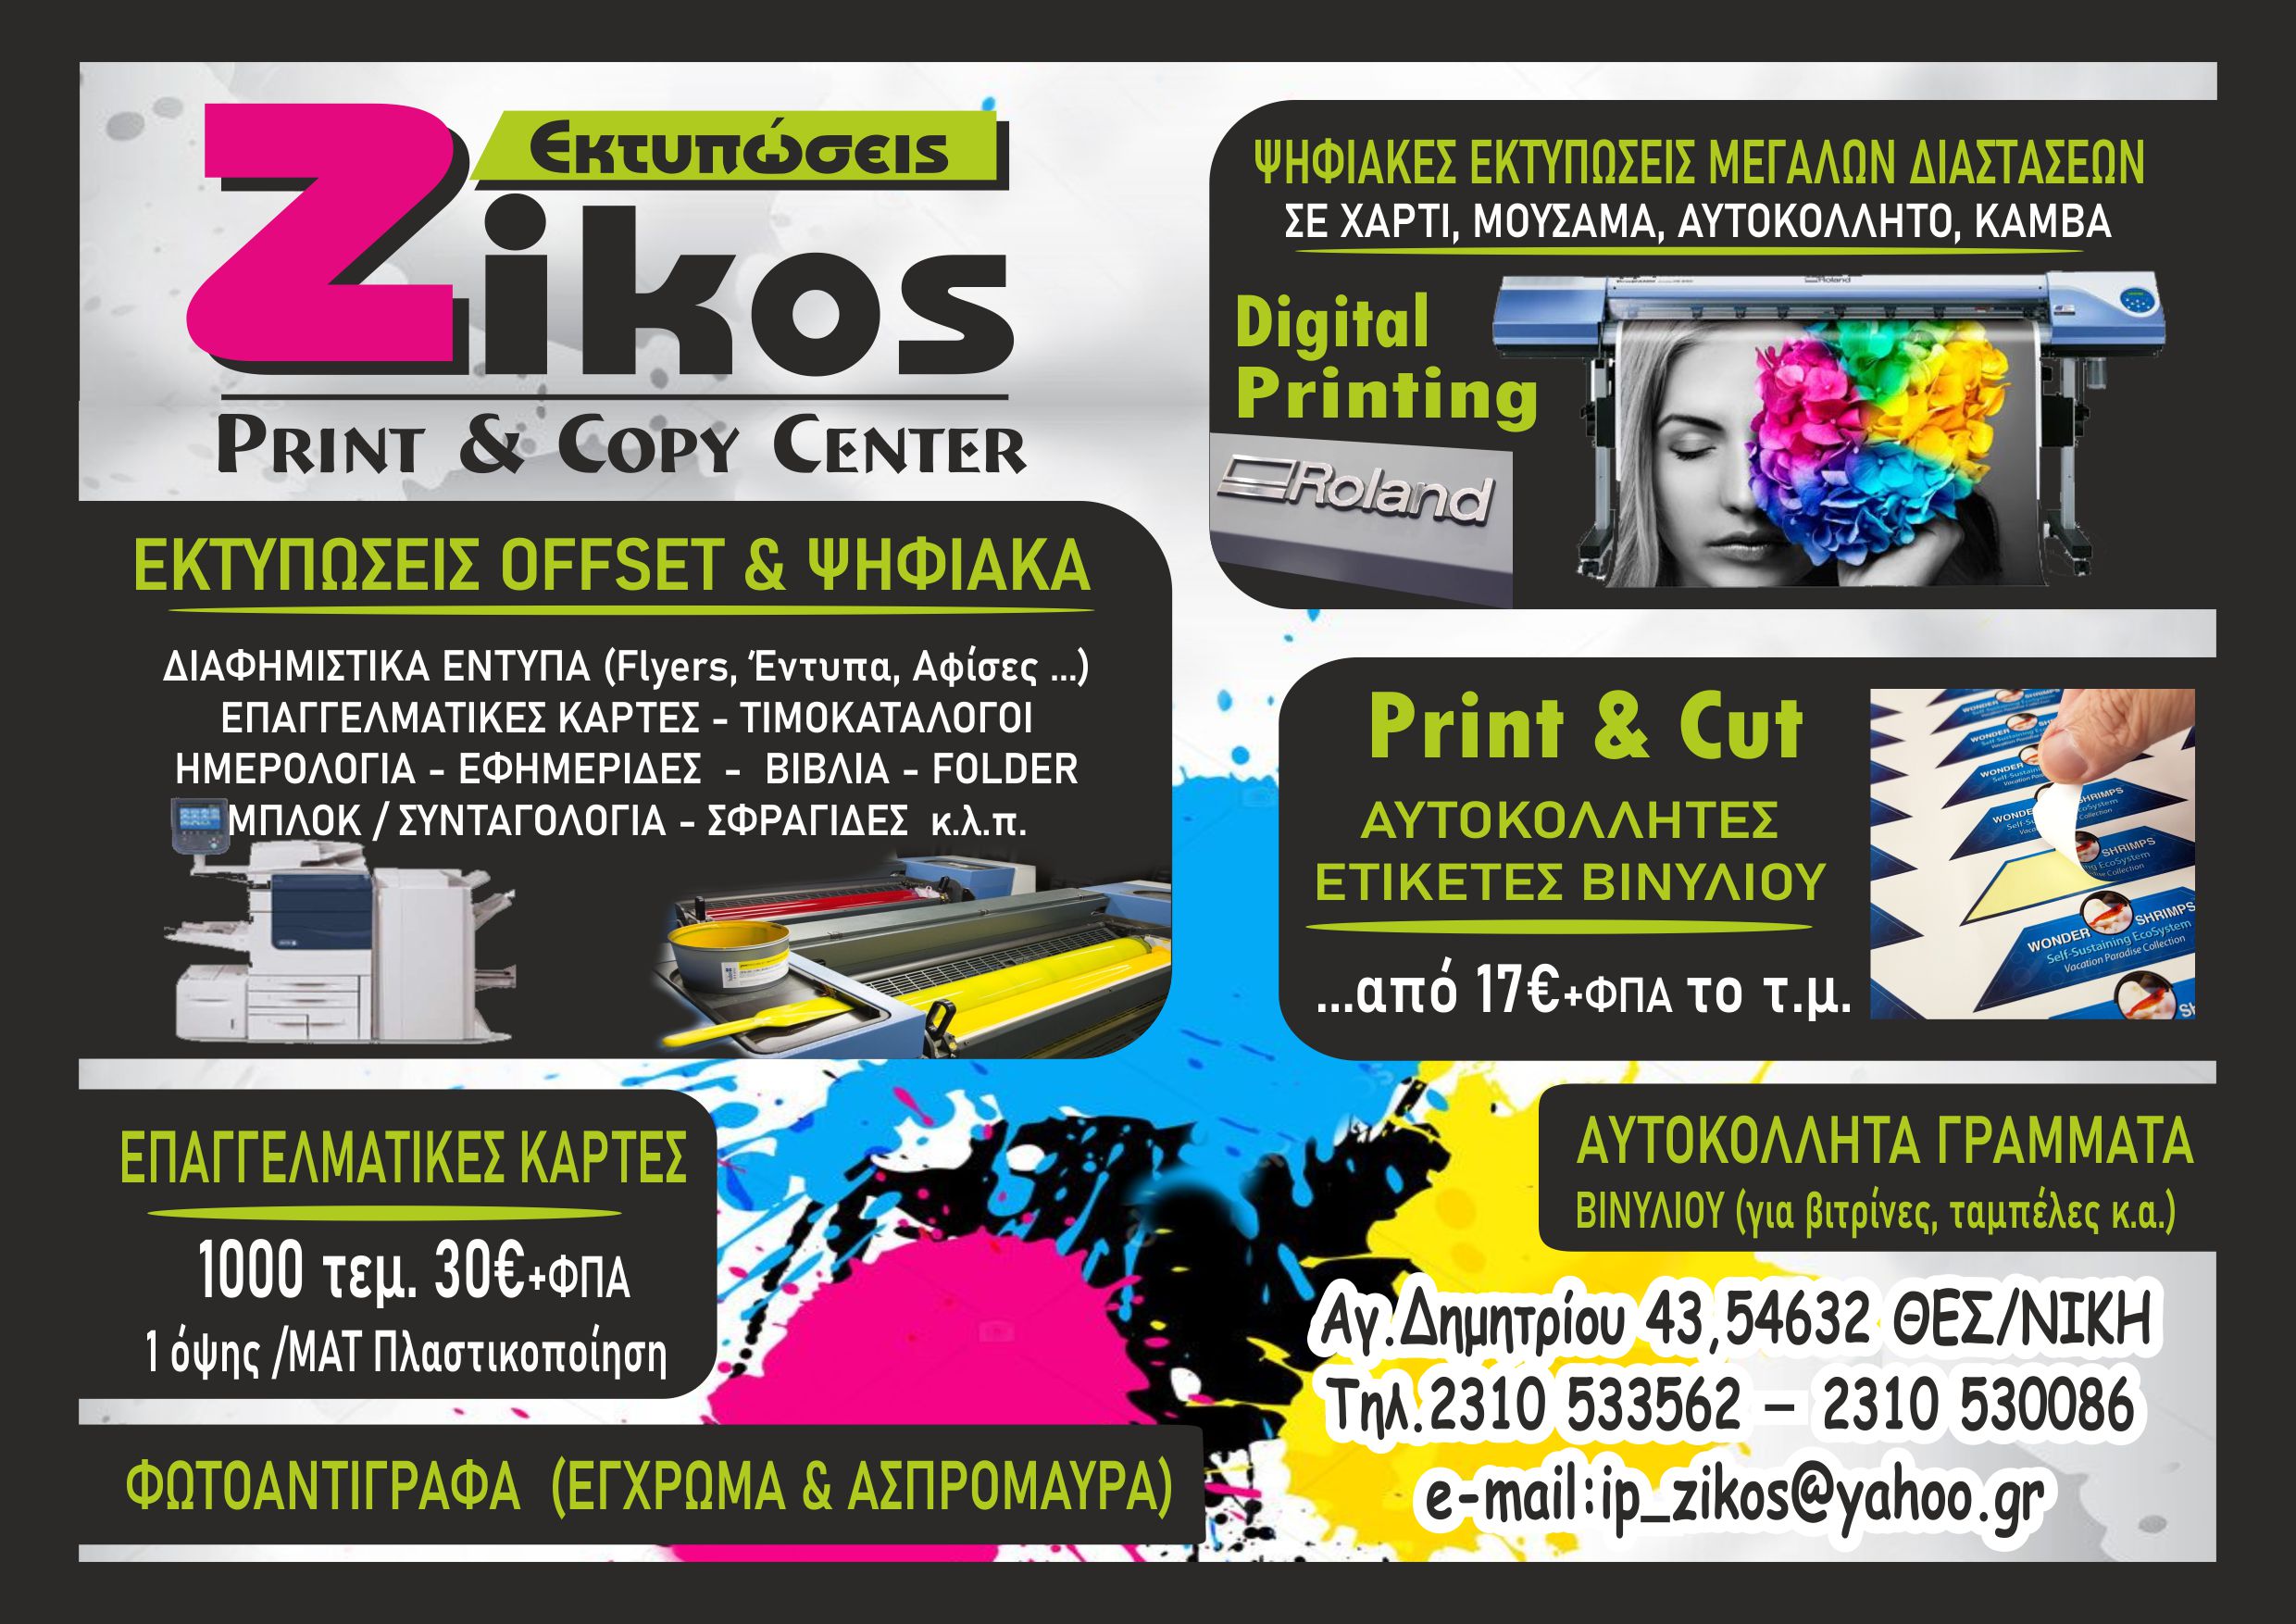 Εκτυπώσεις Θεσσαλονίκη | Offset | Φωτοτυπίες Έγχρωμες / Ασπρόμαυρες | Αγ. Δημητρίου 43, Θεσσαλονίκη 54632 | 2310533562 | ip_zikos@yahoo.gr